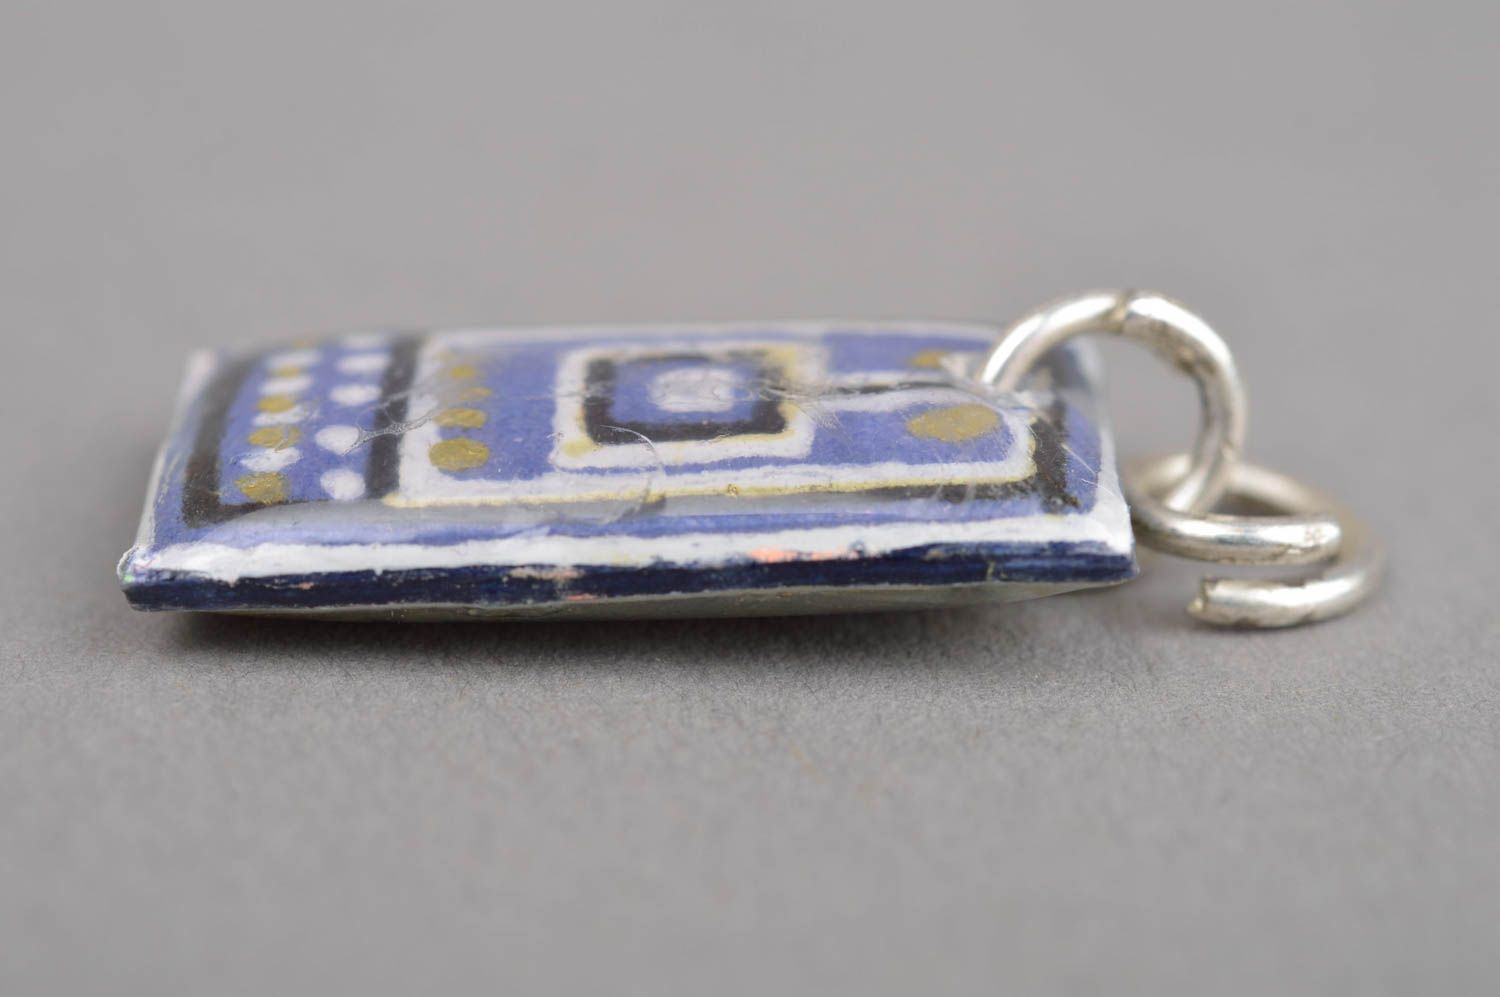 Beautiful jewellry handmade epoxy pendant fashion tips for girls small gifts photo 2